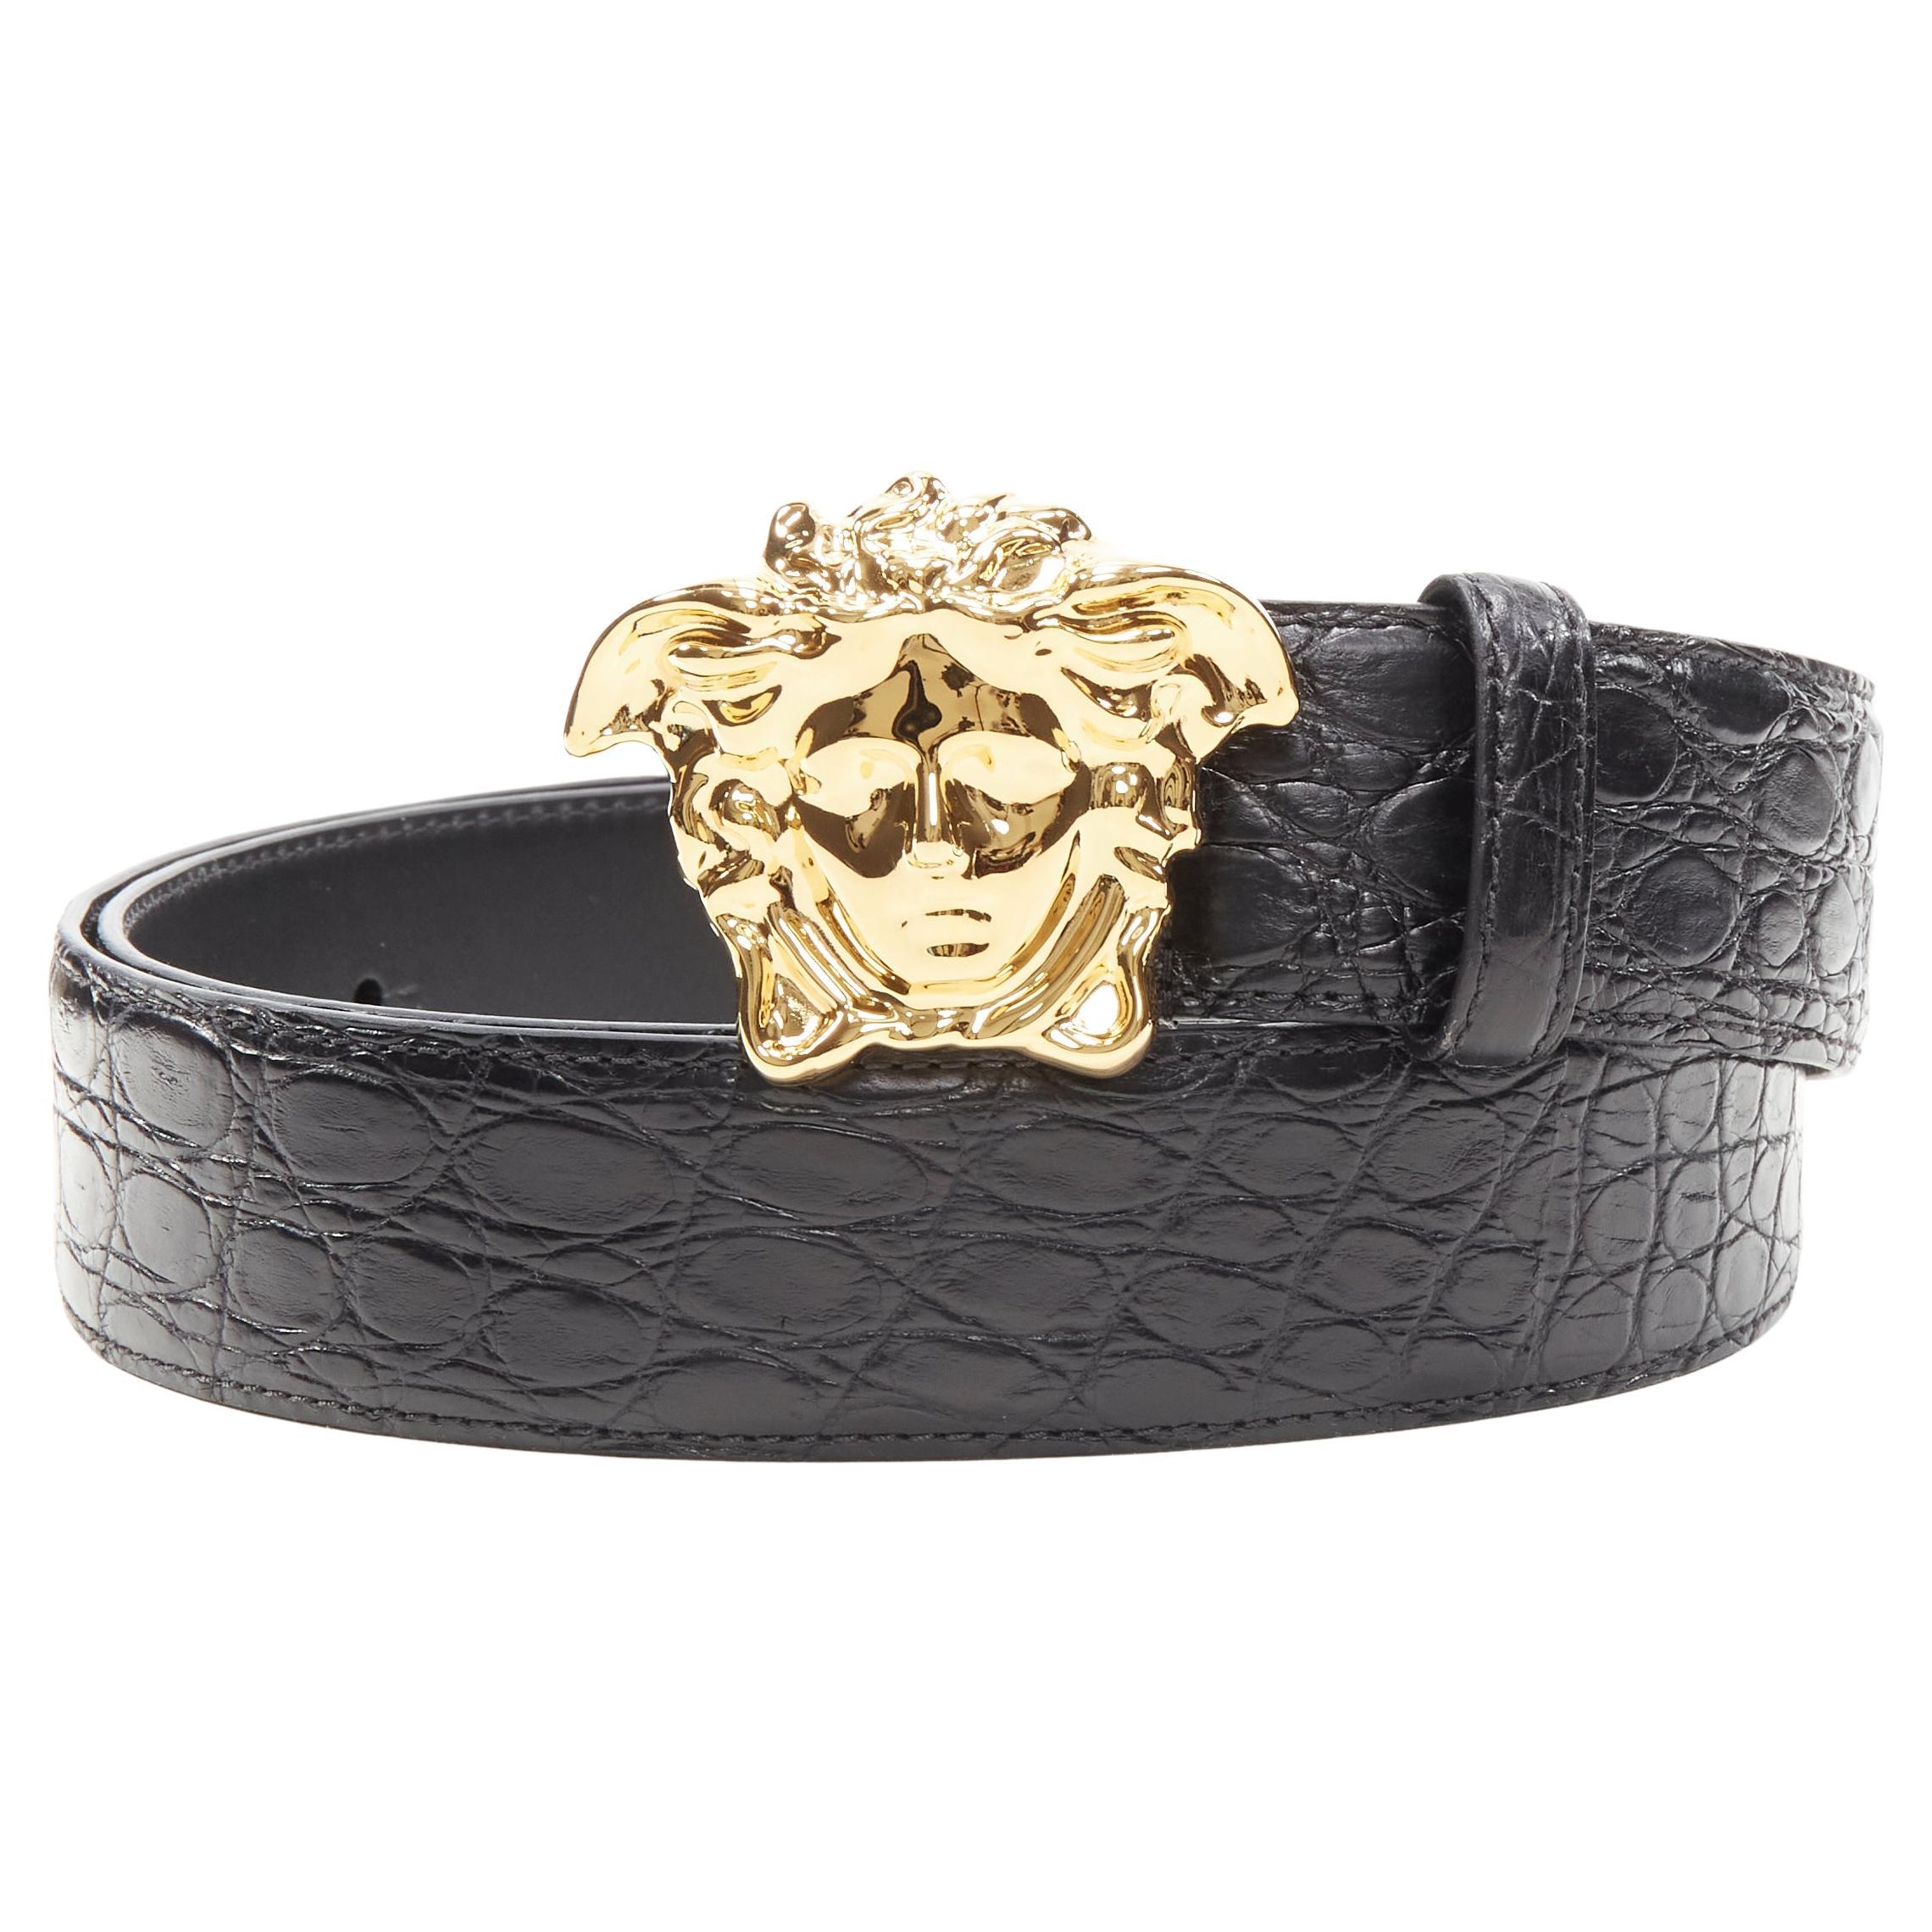 new VERSACE $1200 La Medusa gold buckle black croc leather belt 95cm 36-40"